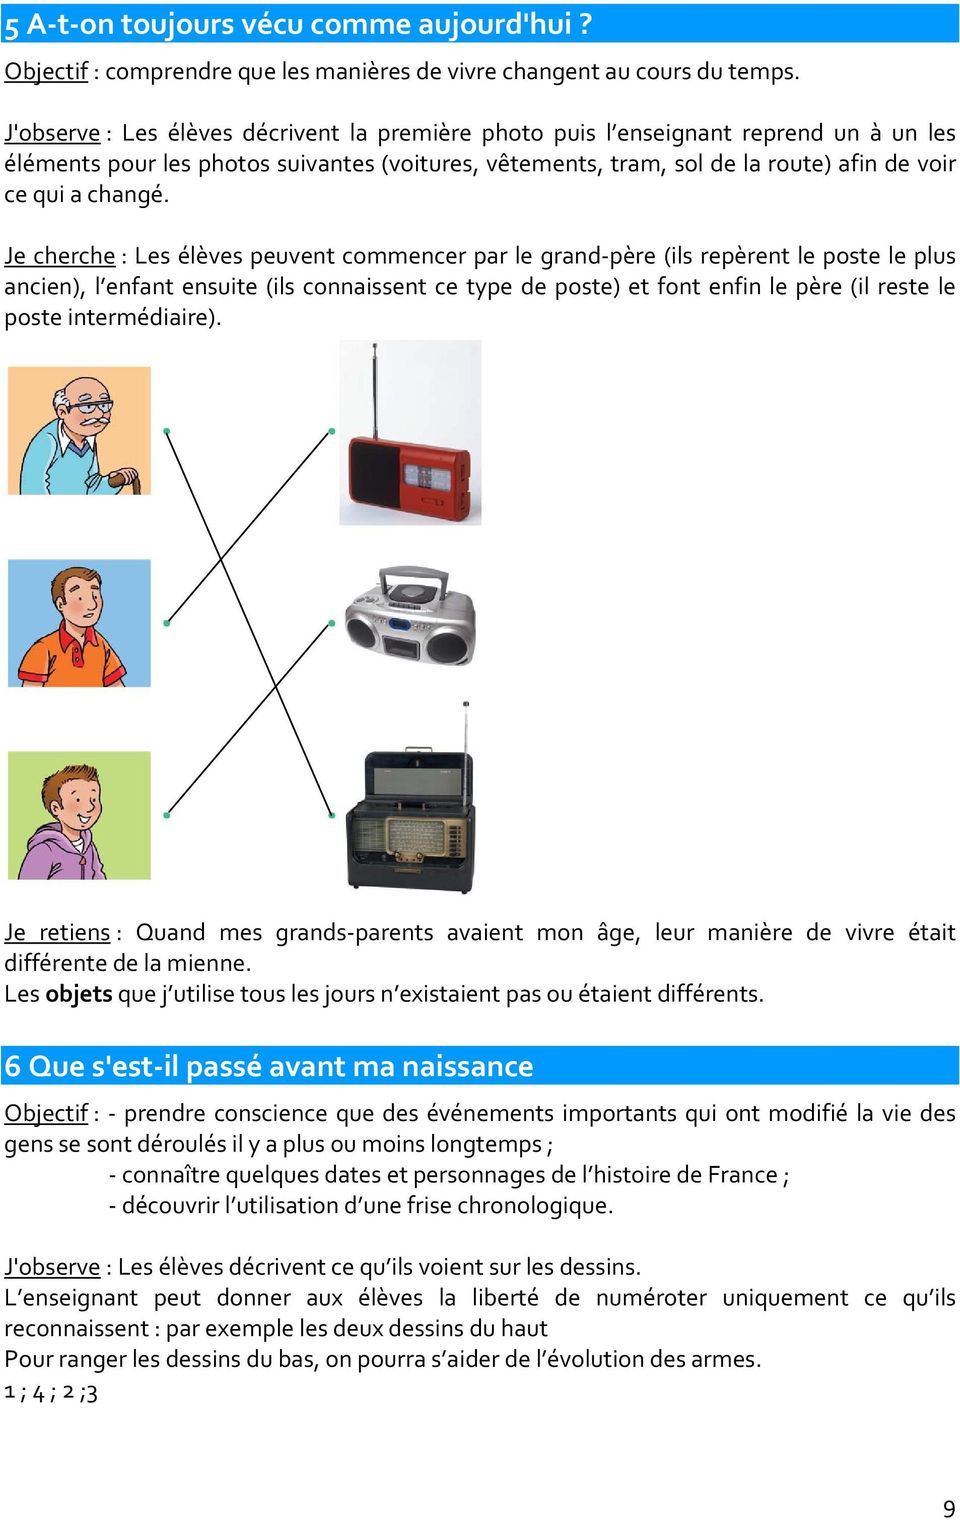 Ce1 Cahiers Luciole Guide De L Enseignant Les De La A Courdent D Dessobry Pdf Free Download